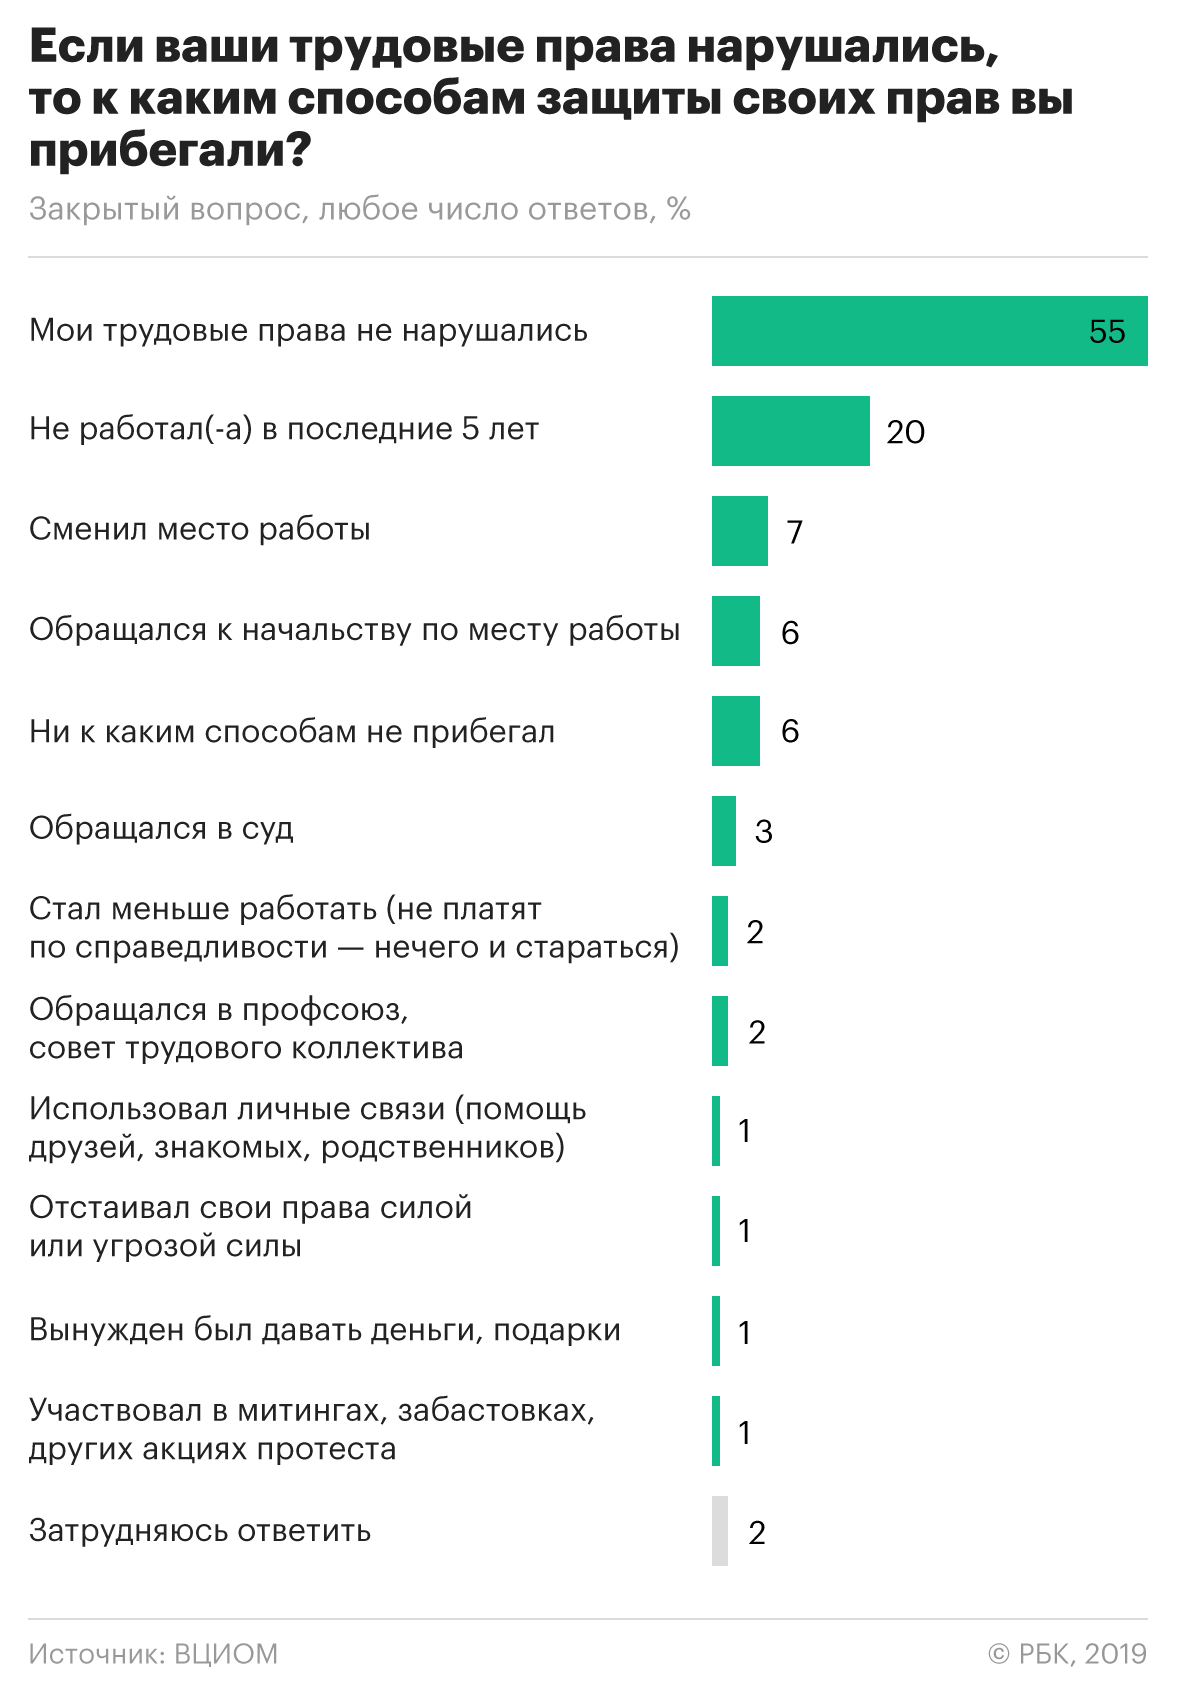 Россияне назвали самые популярные способы защиты трудовых прав